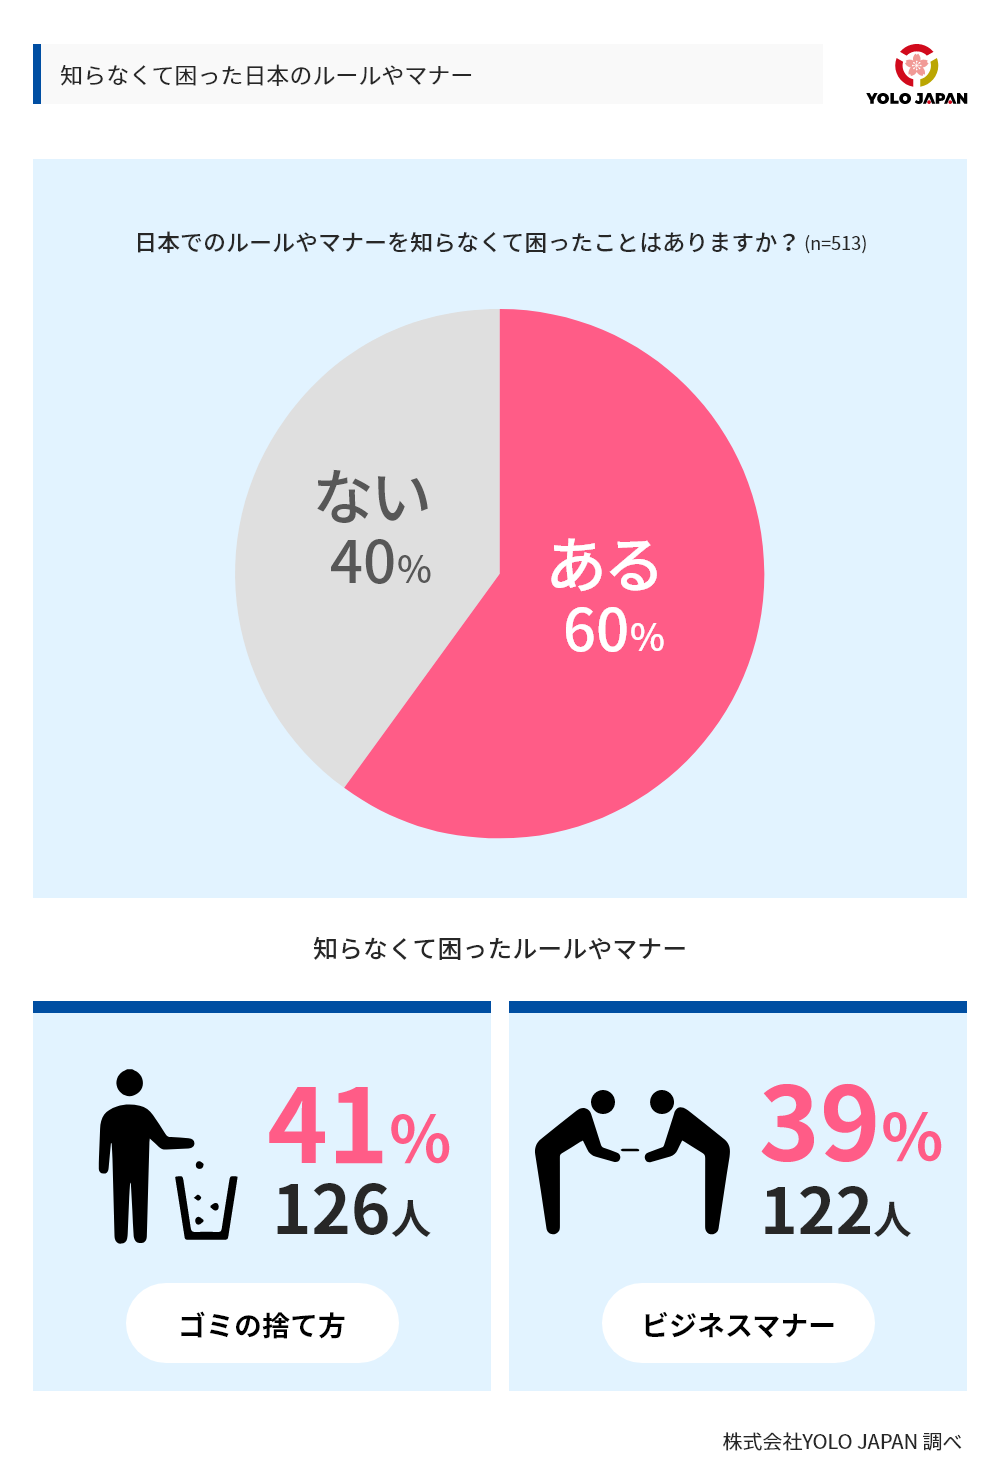 知らなくて困った日本のルールやマナーについてのグラフ。日本でのルールやマナーを知らなくて困ったことがありますかという設問に対し、513人のうち60％があると回答。知らなくてこまったルールやマナーの２トップは、ごみの捨てかた（41％、126人）とビジネスマナー（39％、122人）であった。